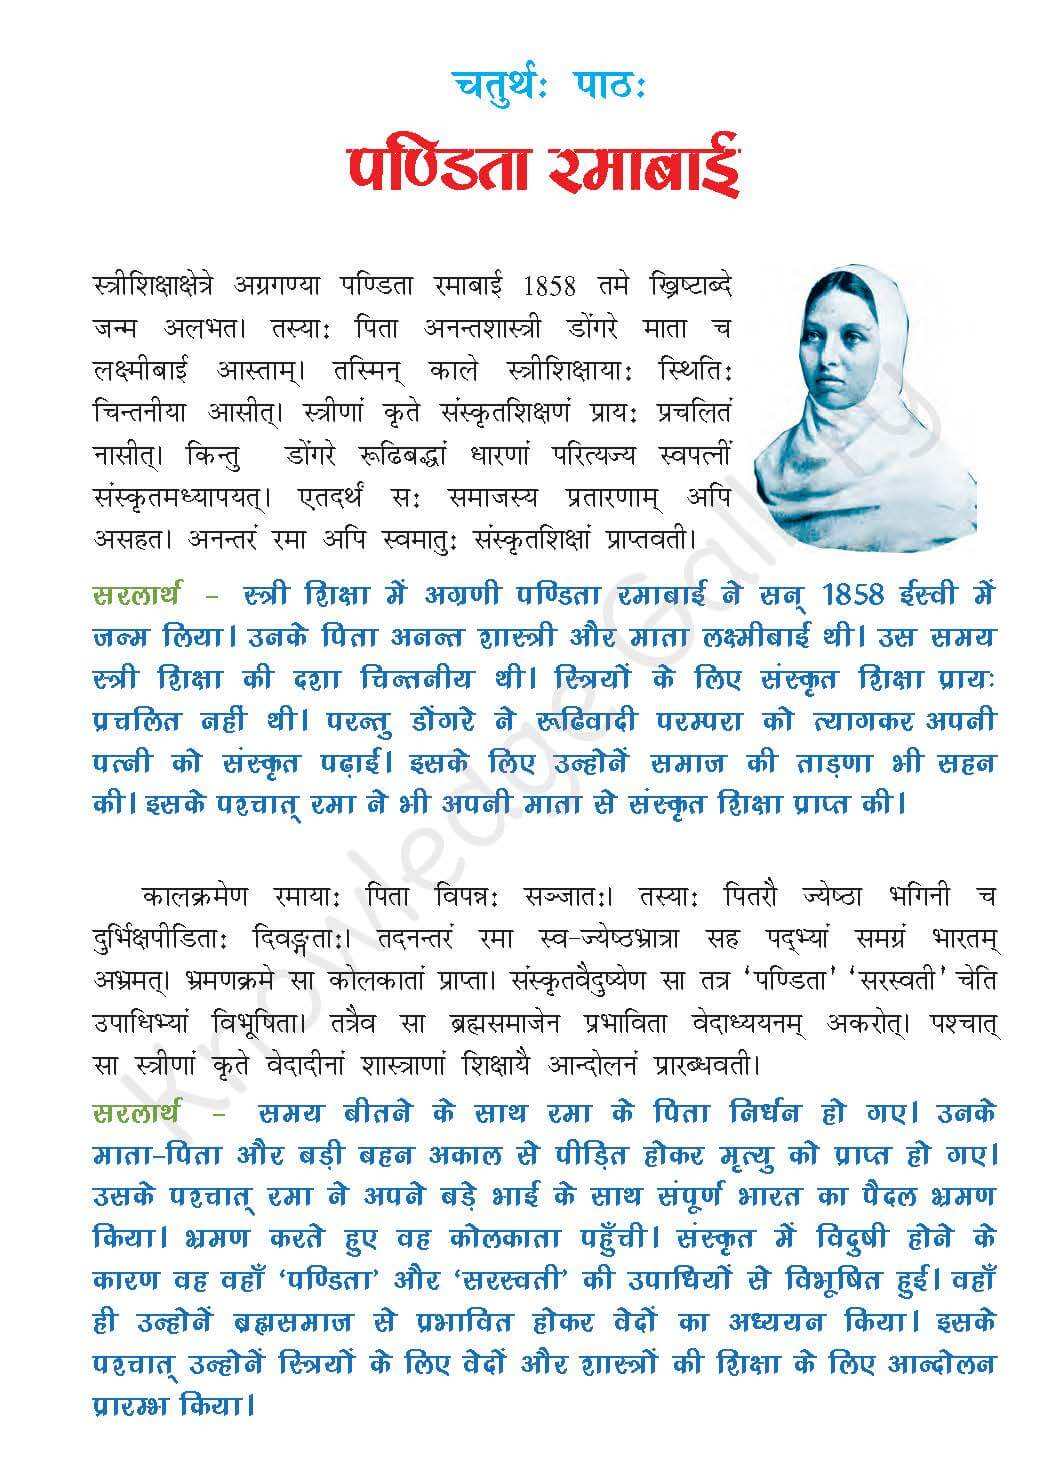 NCERT Solution For Class 7 Sanskrit Chapter 4 part 1